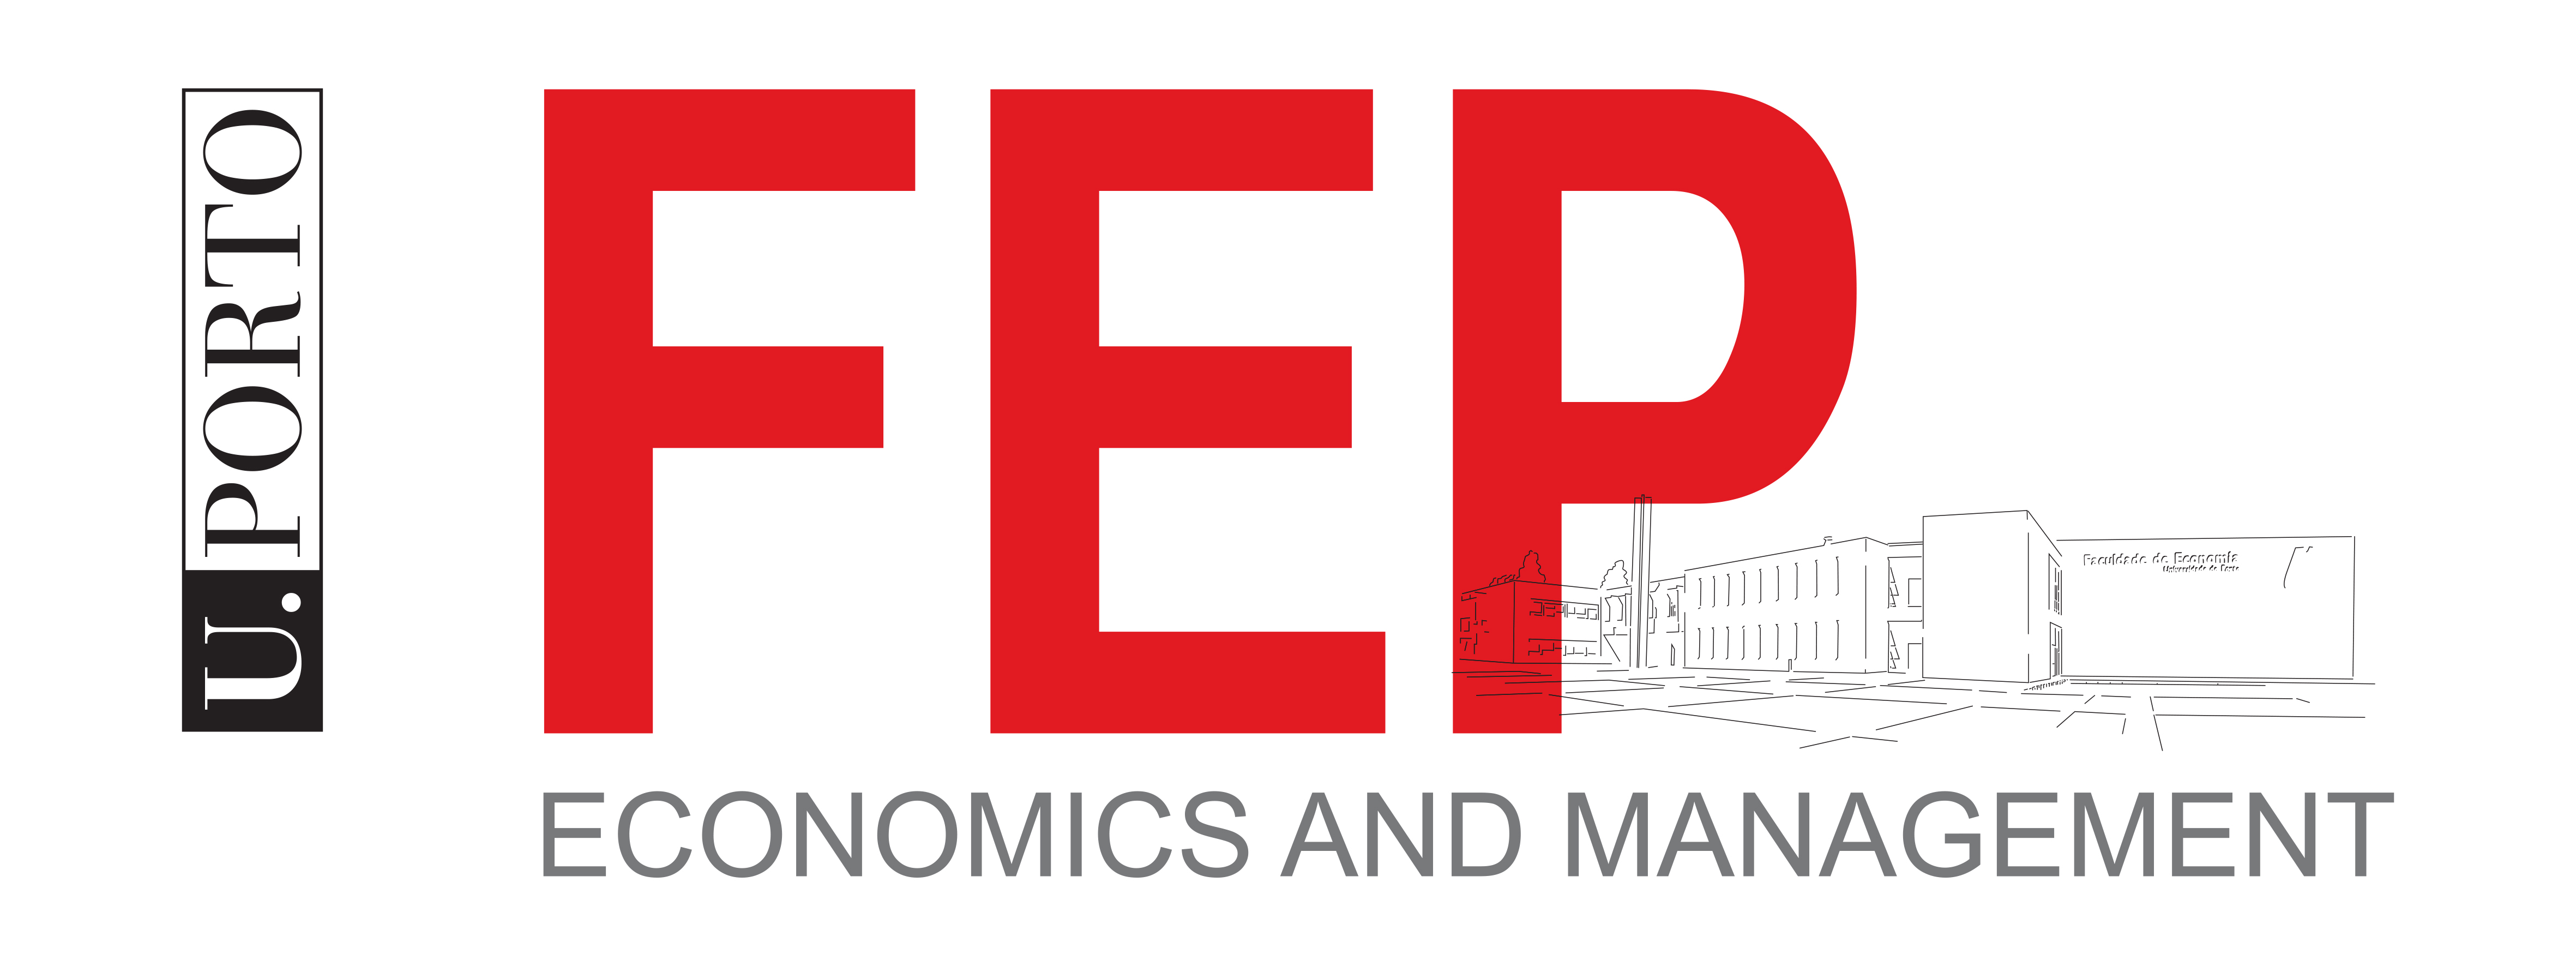 Logo School of Economics and Management, University of Porto - Faculdade de Economia da Universidade do Porto